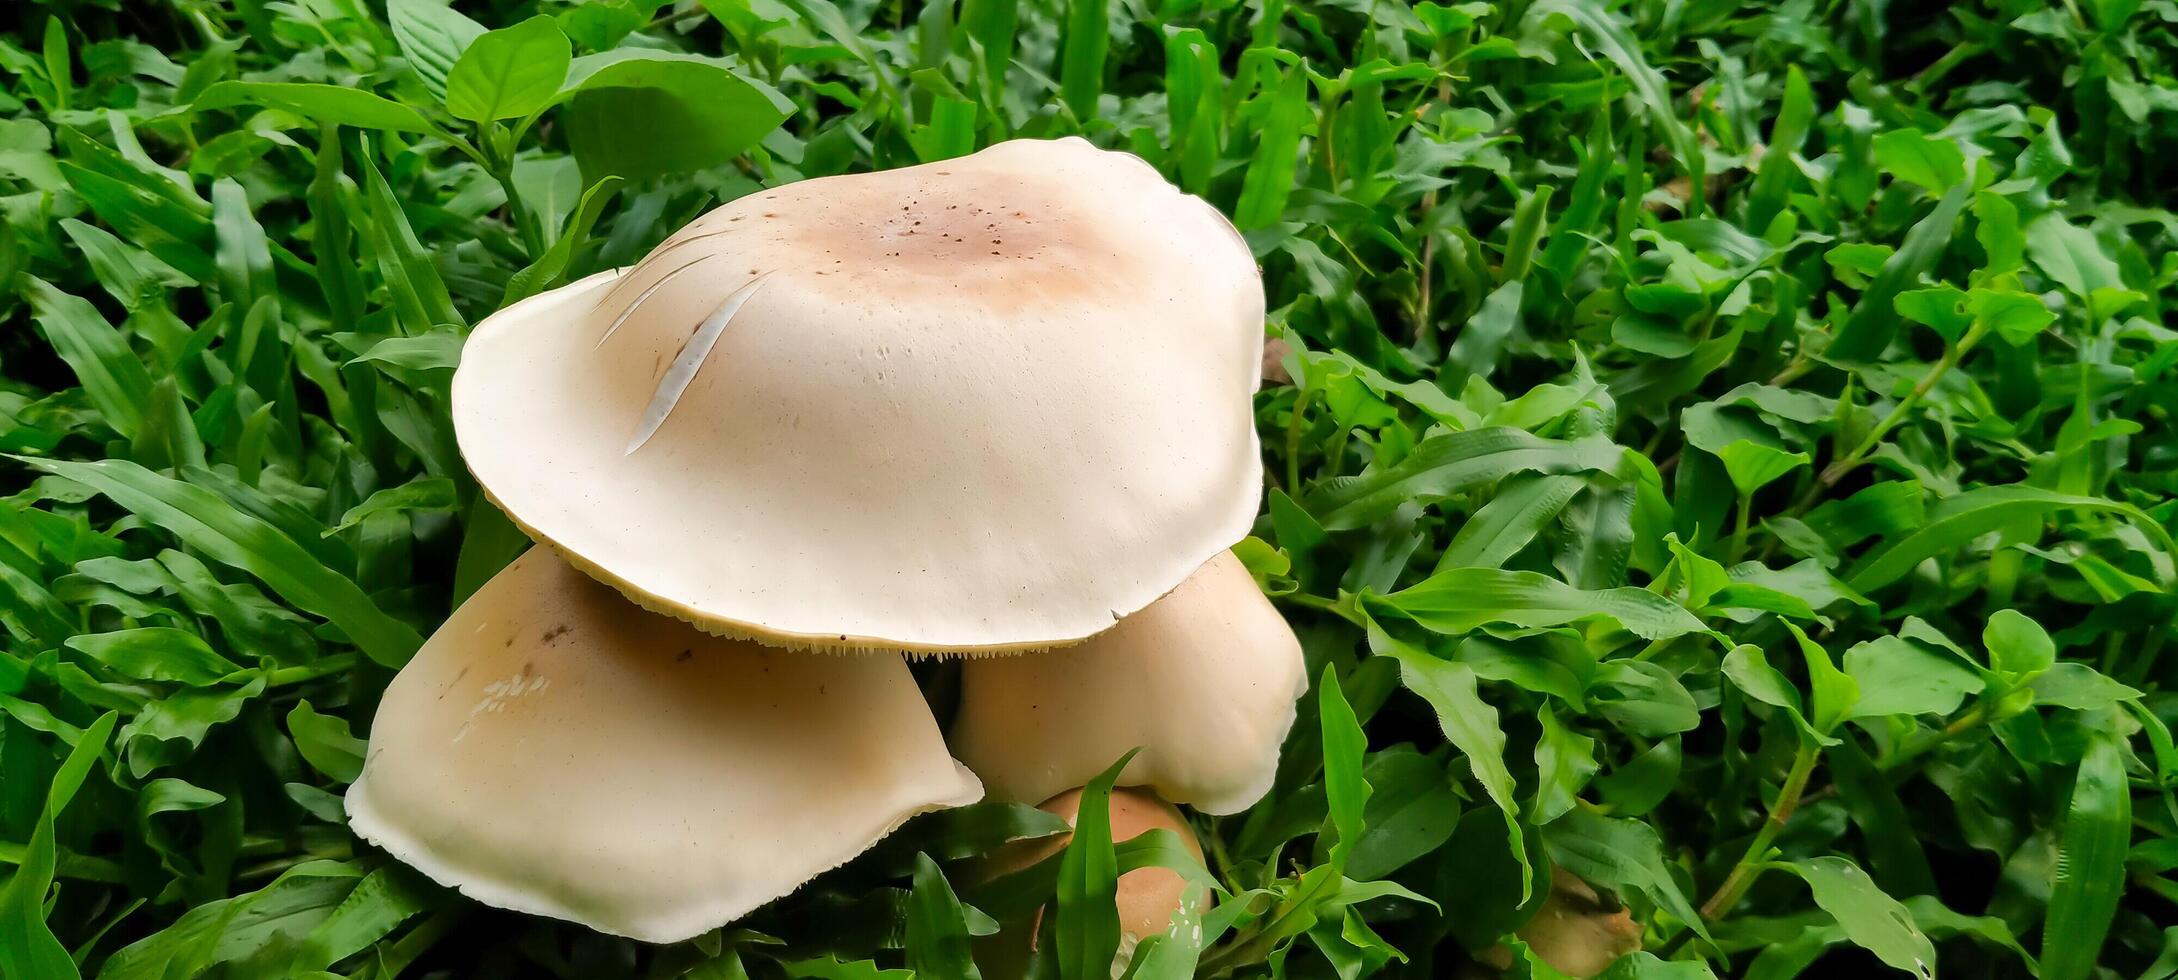 een verzameling van wit champignons groeit tussen de groen gras foto